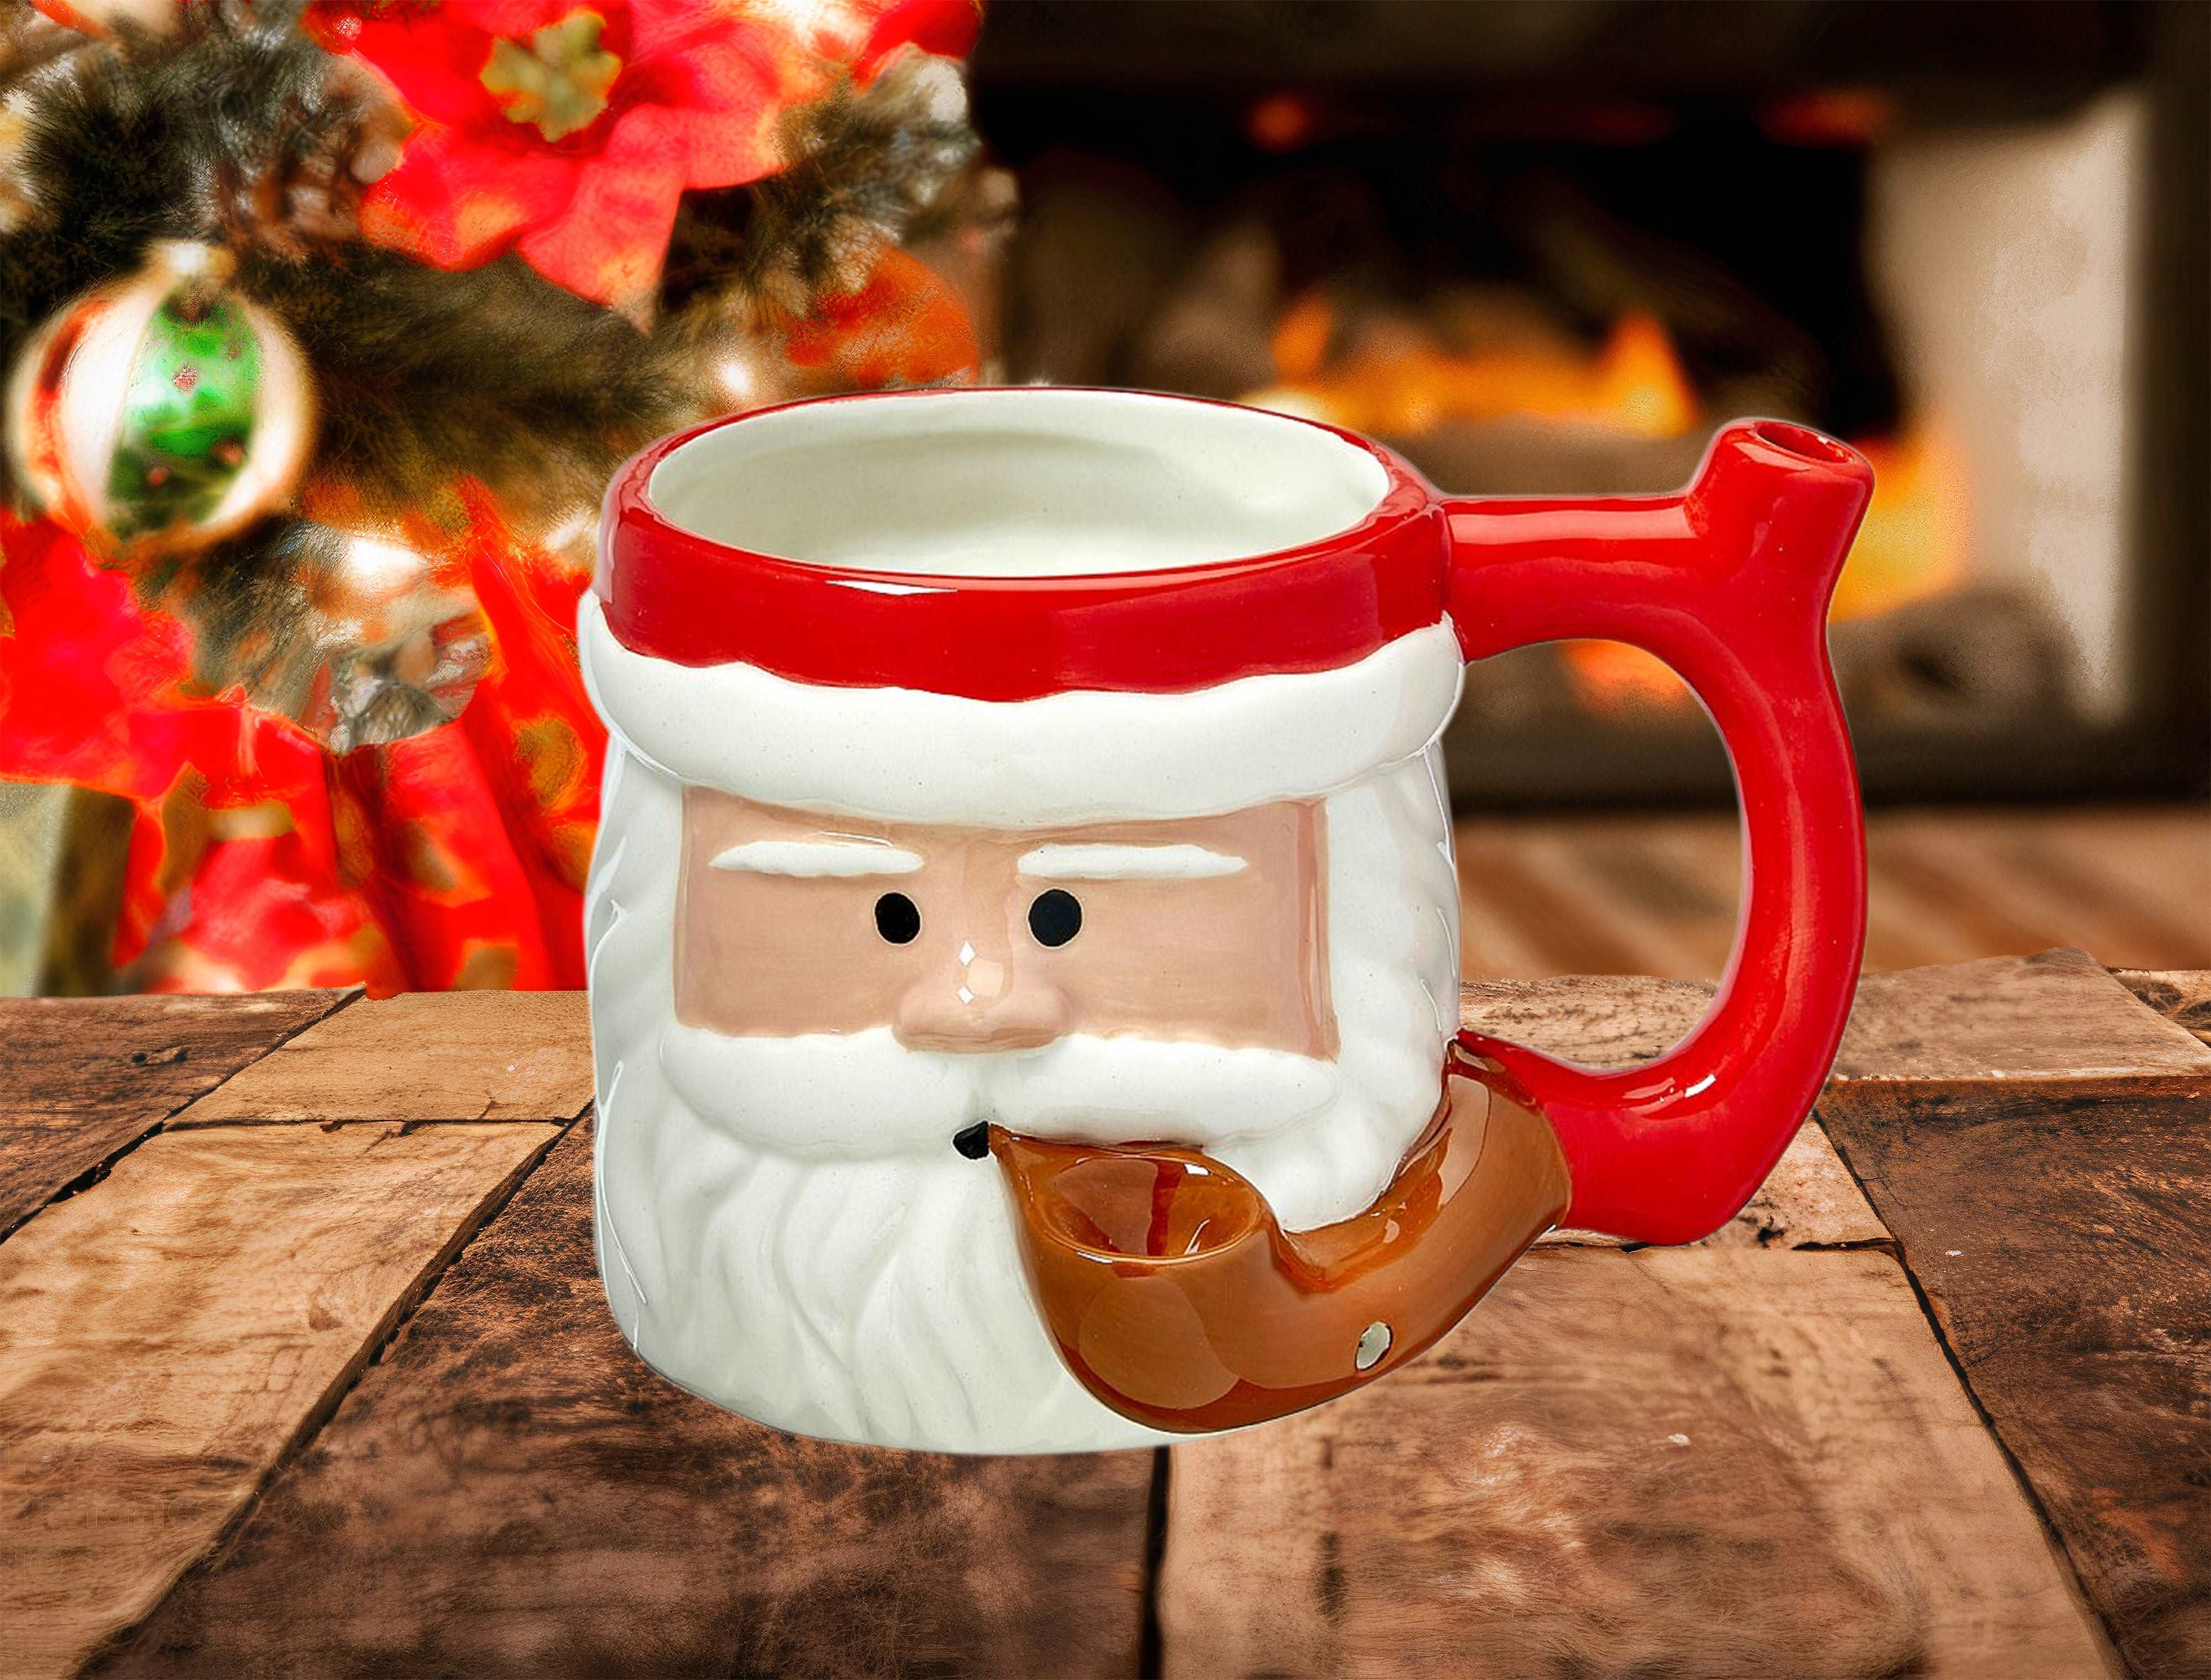 Wake N' Bake Santa Claus Coffee Mug With Pipe Bowl - Supply Natural